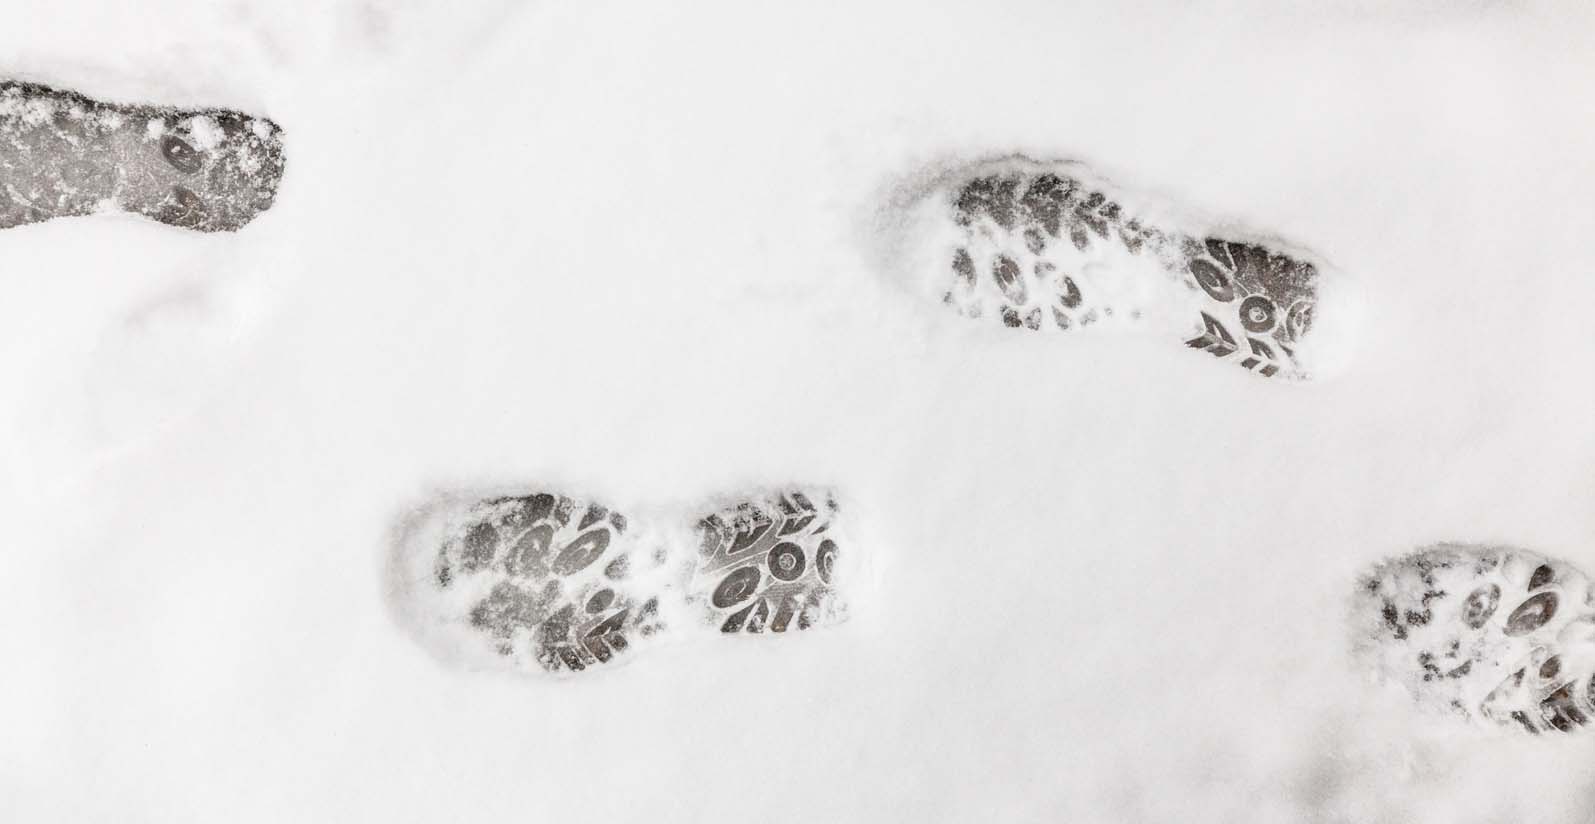 Дорожка следов обуви на снегу